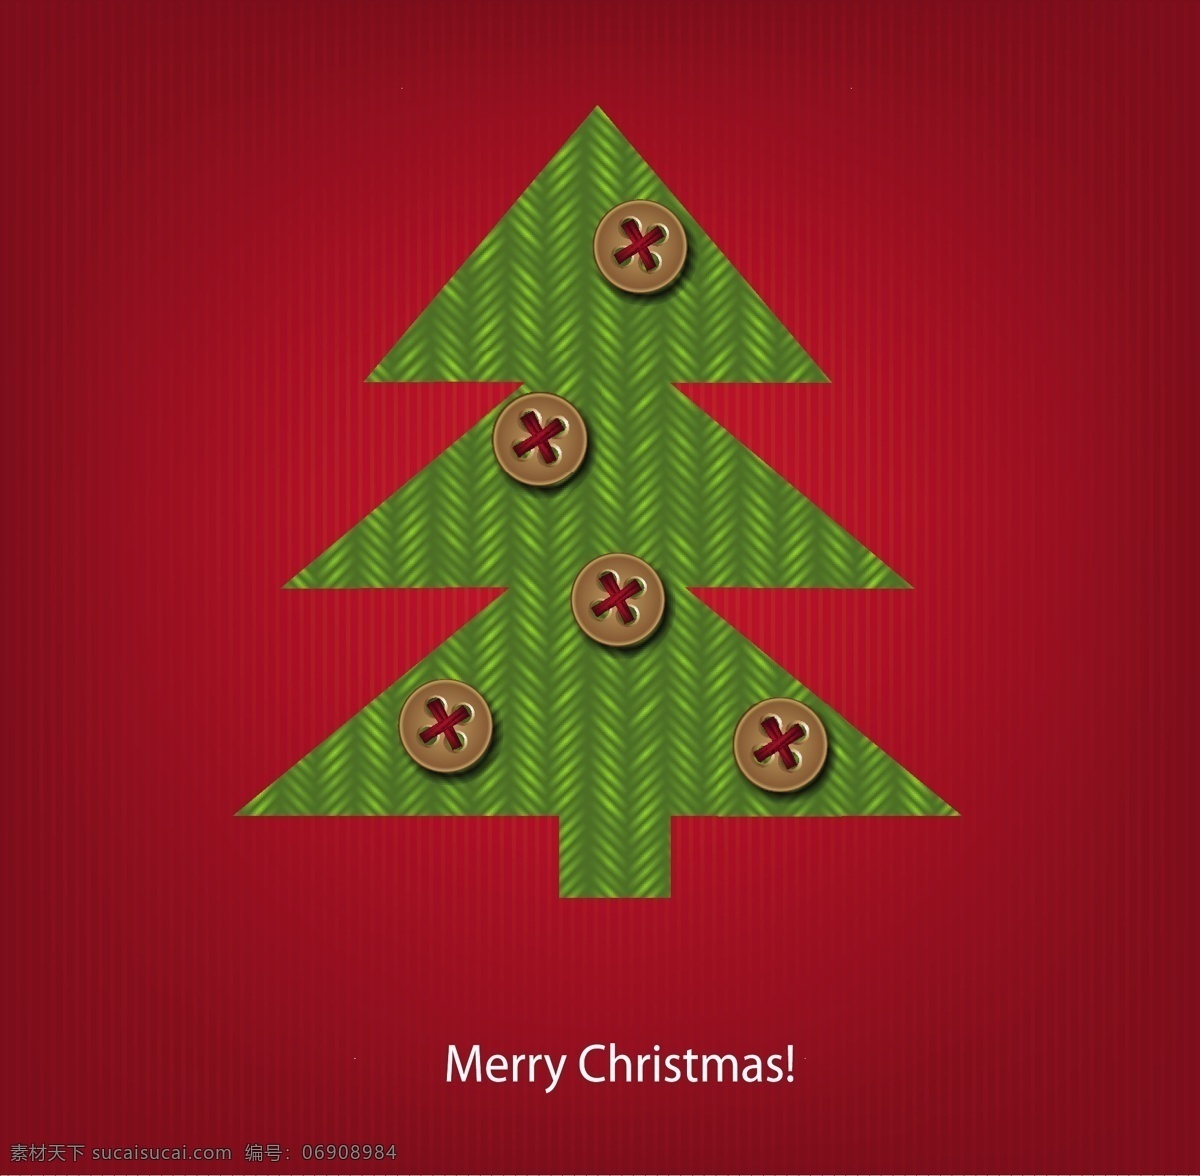 矢量 红色 背景 创意 圣诞树 设计素材 创意设计 圣诞背景 圣诞节 节日素材